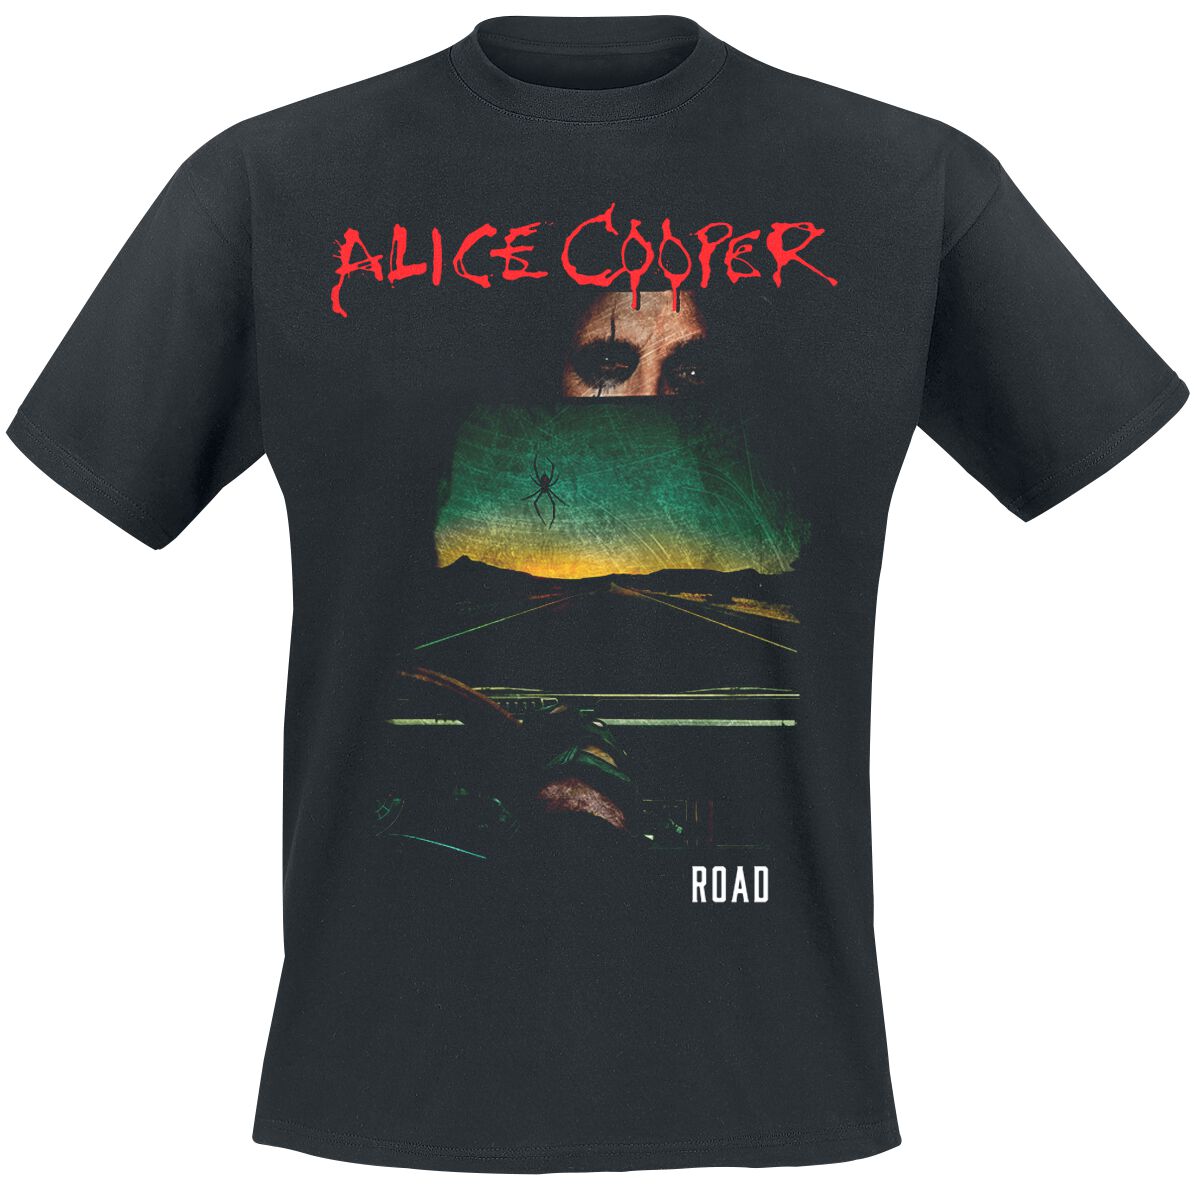 Alice Cooper T-Shirt - Road Cover Tracklist - S bis XXL - für Männer - Größe XL - schwarz  - Lizenziertes Merchandise!